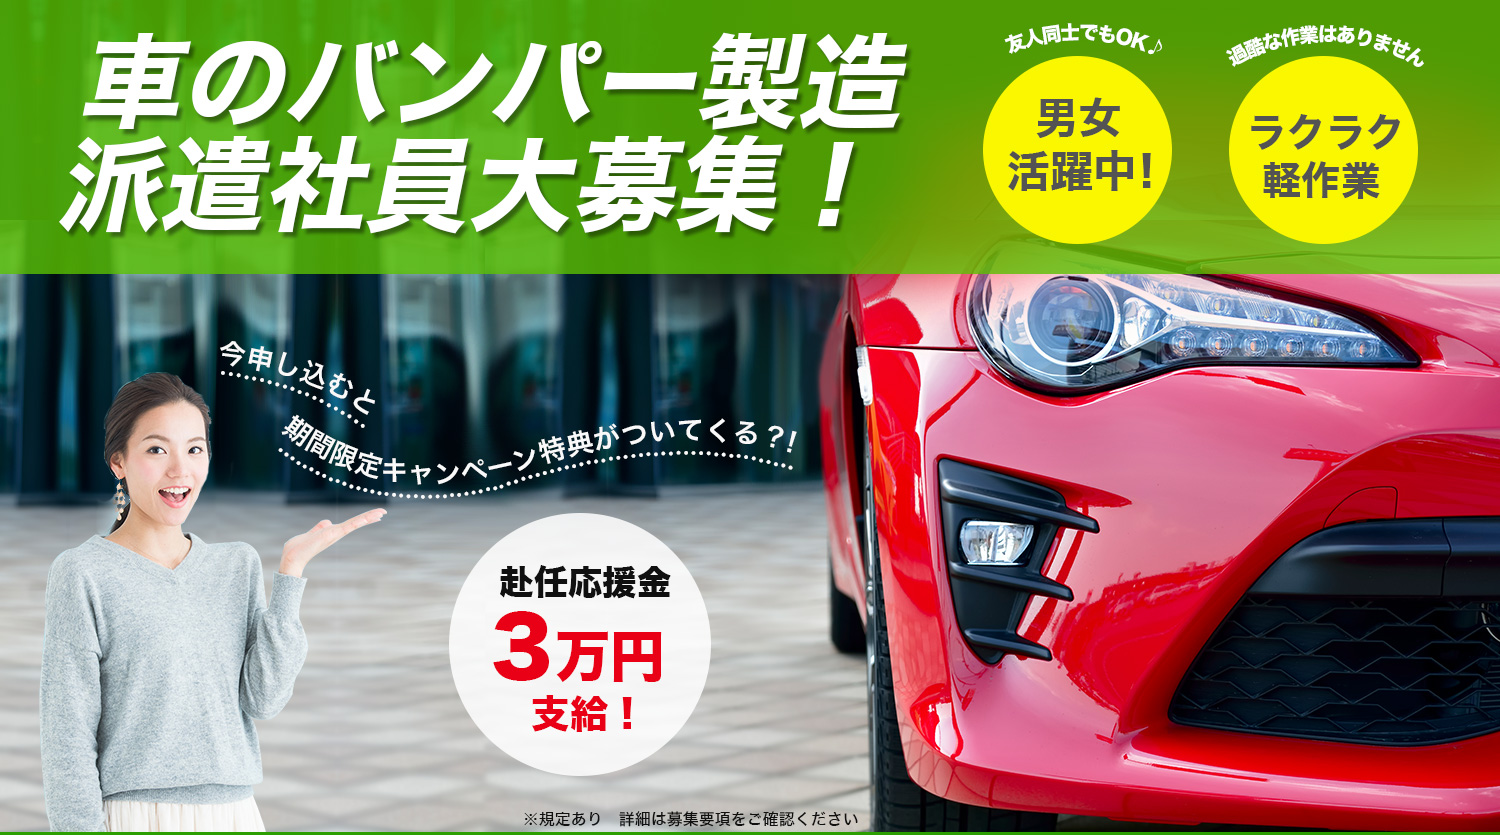 トヨタ系大手企業 期間従業員募集 月収35万円以上可能 入社祝金3万円支給